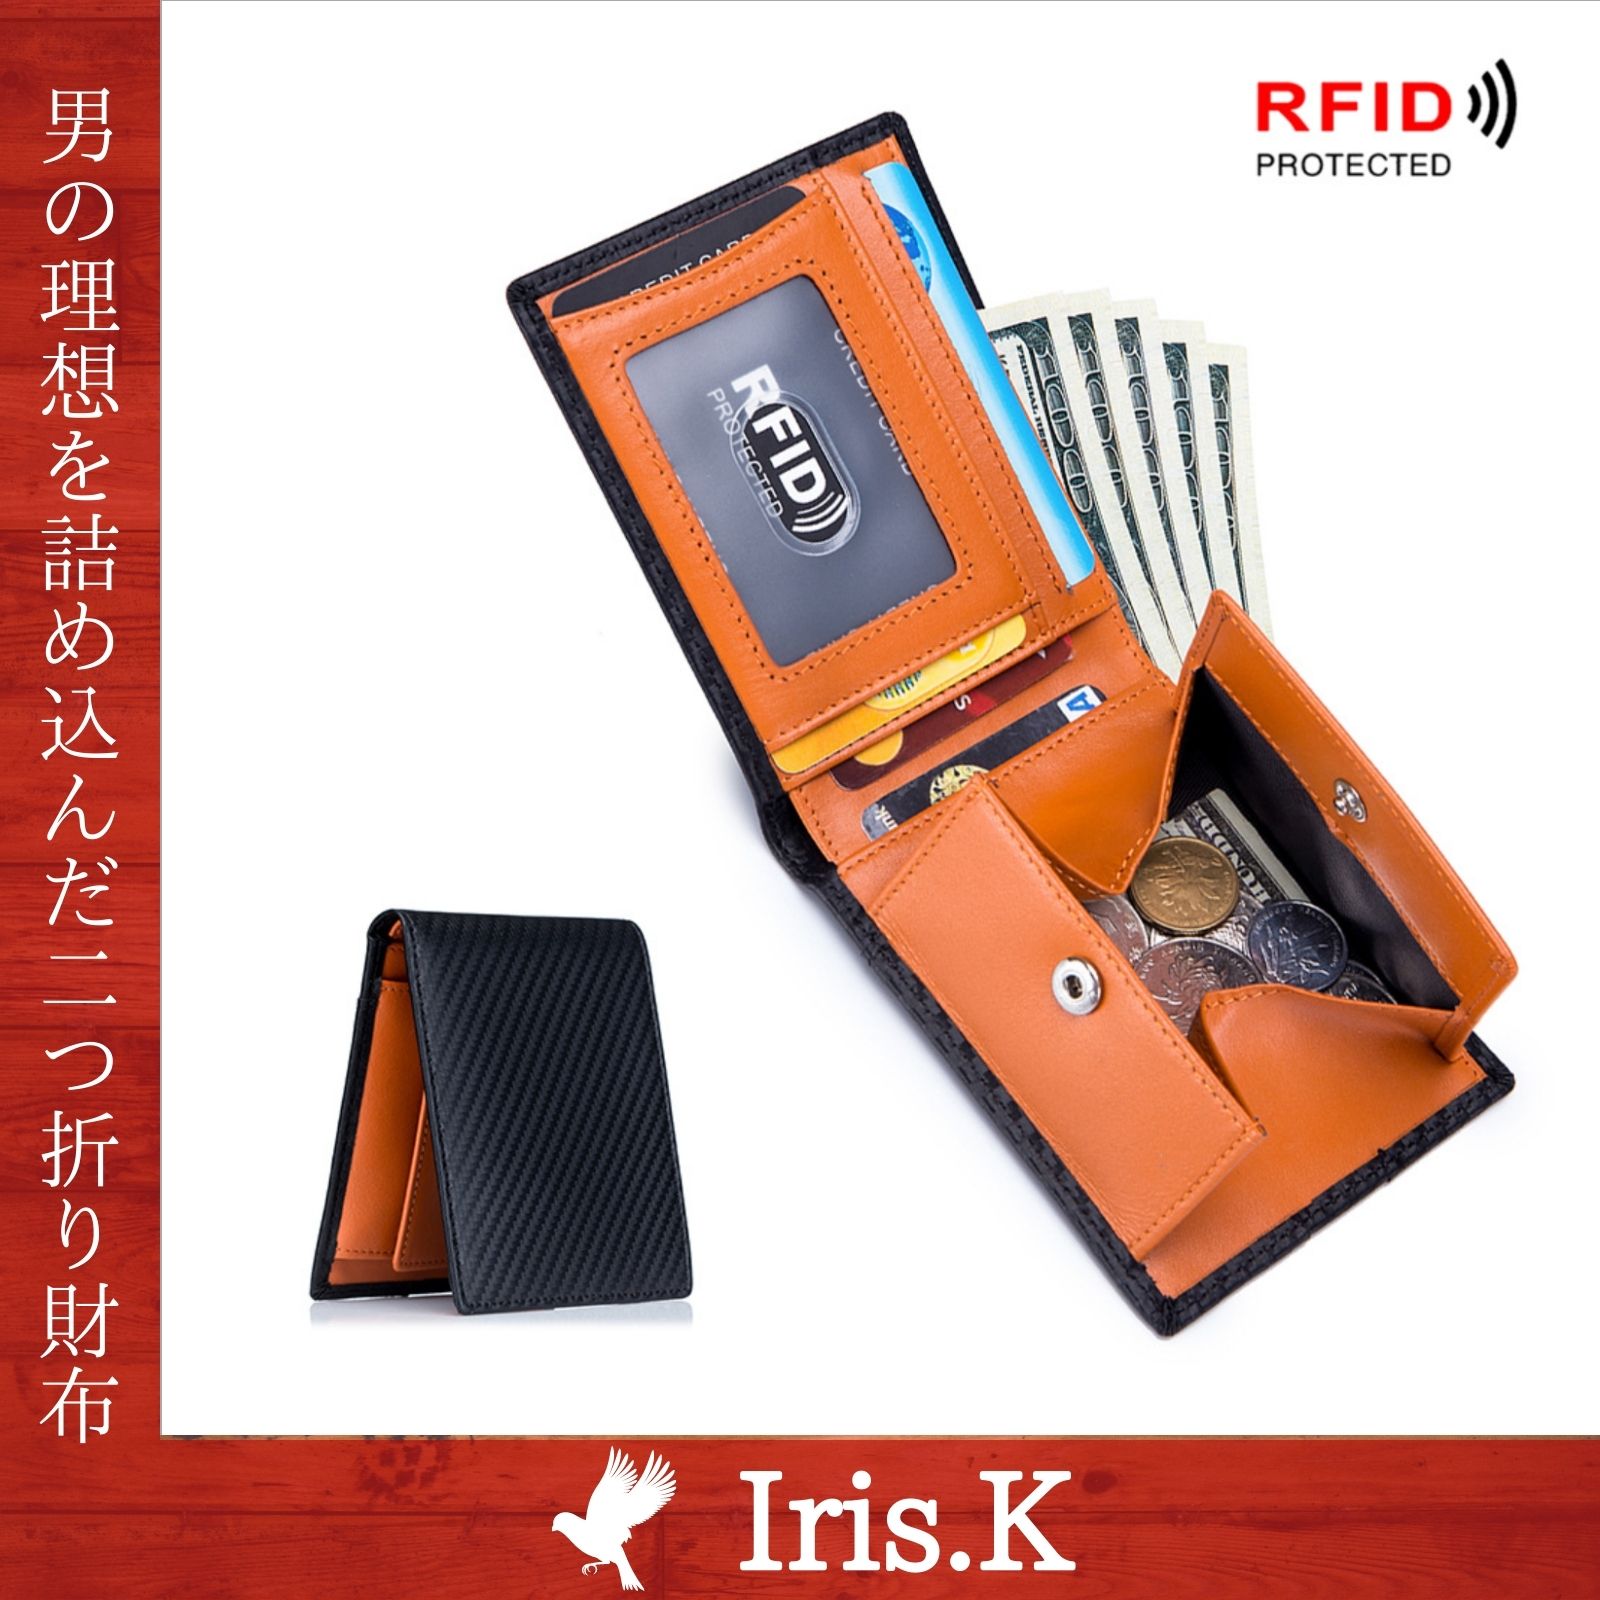 財布 メンズ 二つ折り 小銭入れ 薄型 スキミング防止機能 ウォレット Iris.K813181